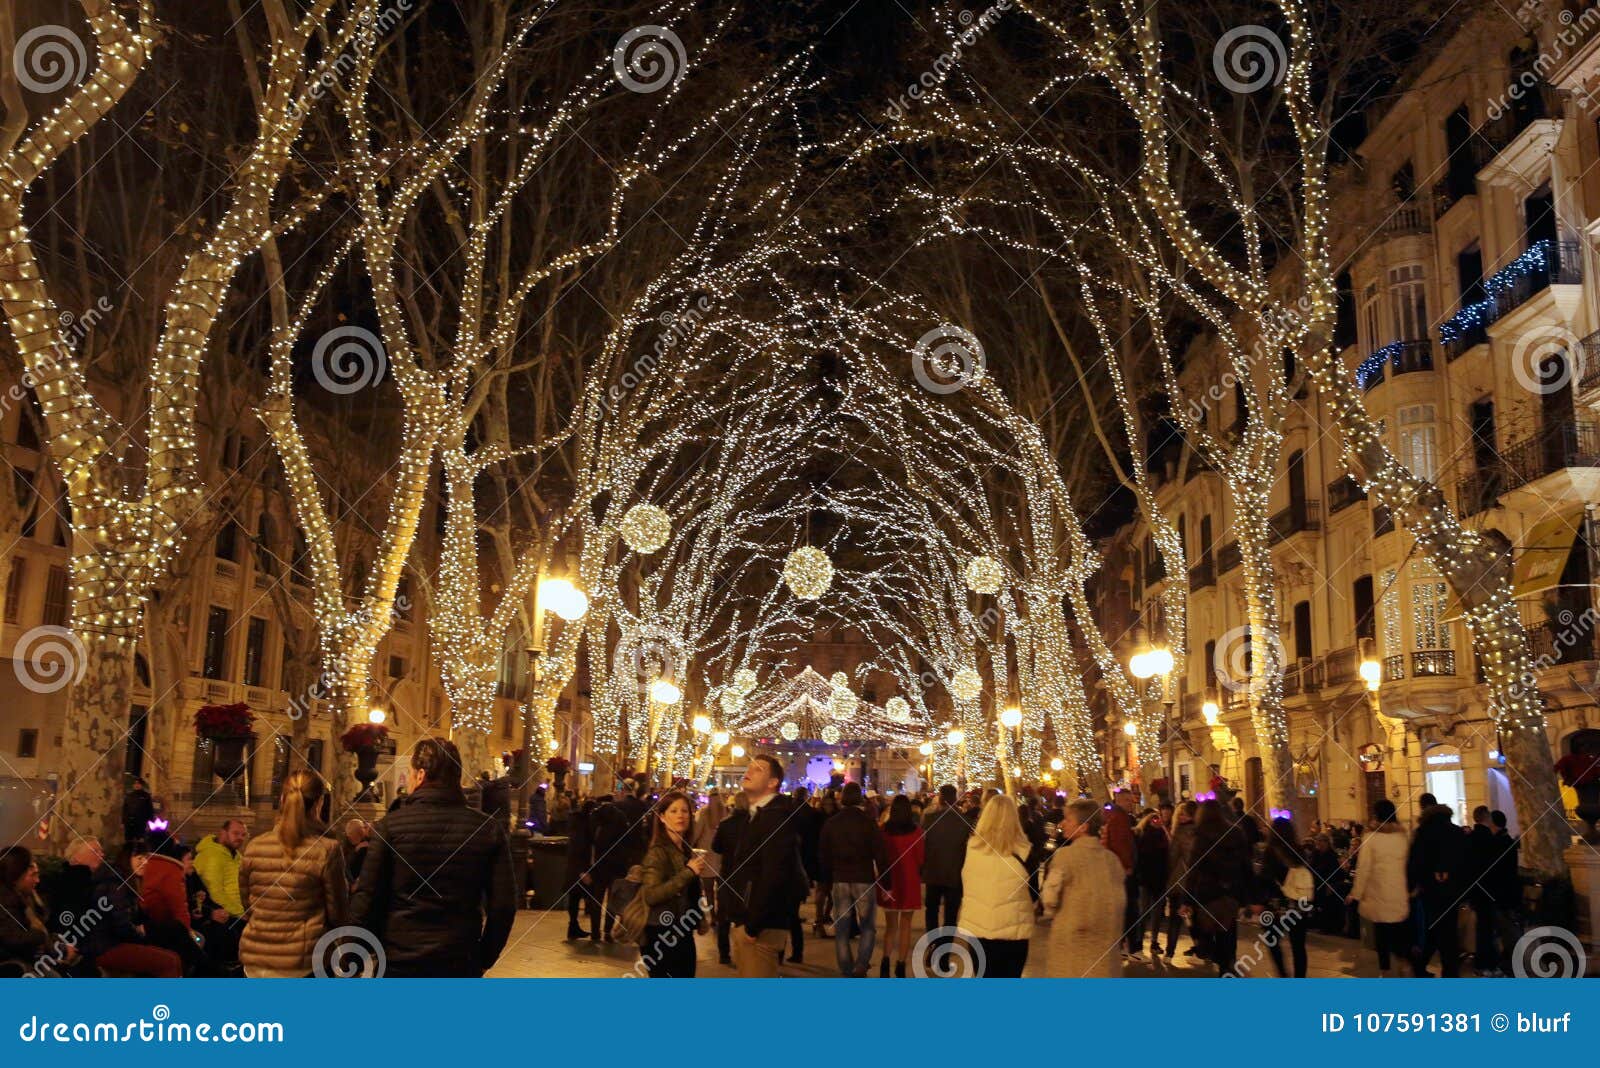  Estas son las siete ciudades españolas con las luces de Navidad más bonitas Decoraci%C3%B3n-de-la-calle-navidad-en-mallorca-espa%C3%B1a-107591381